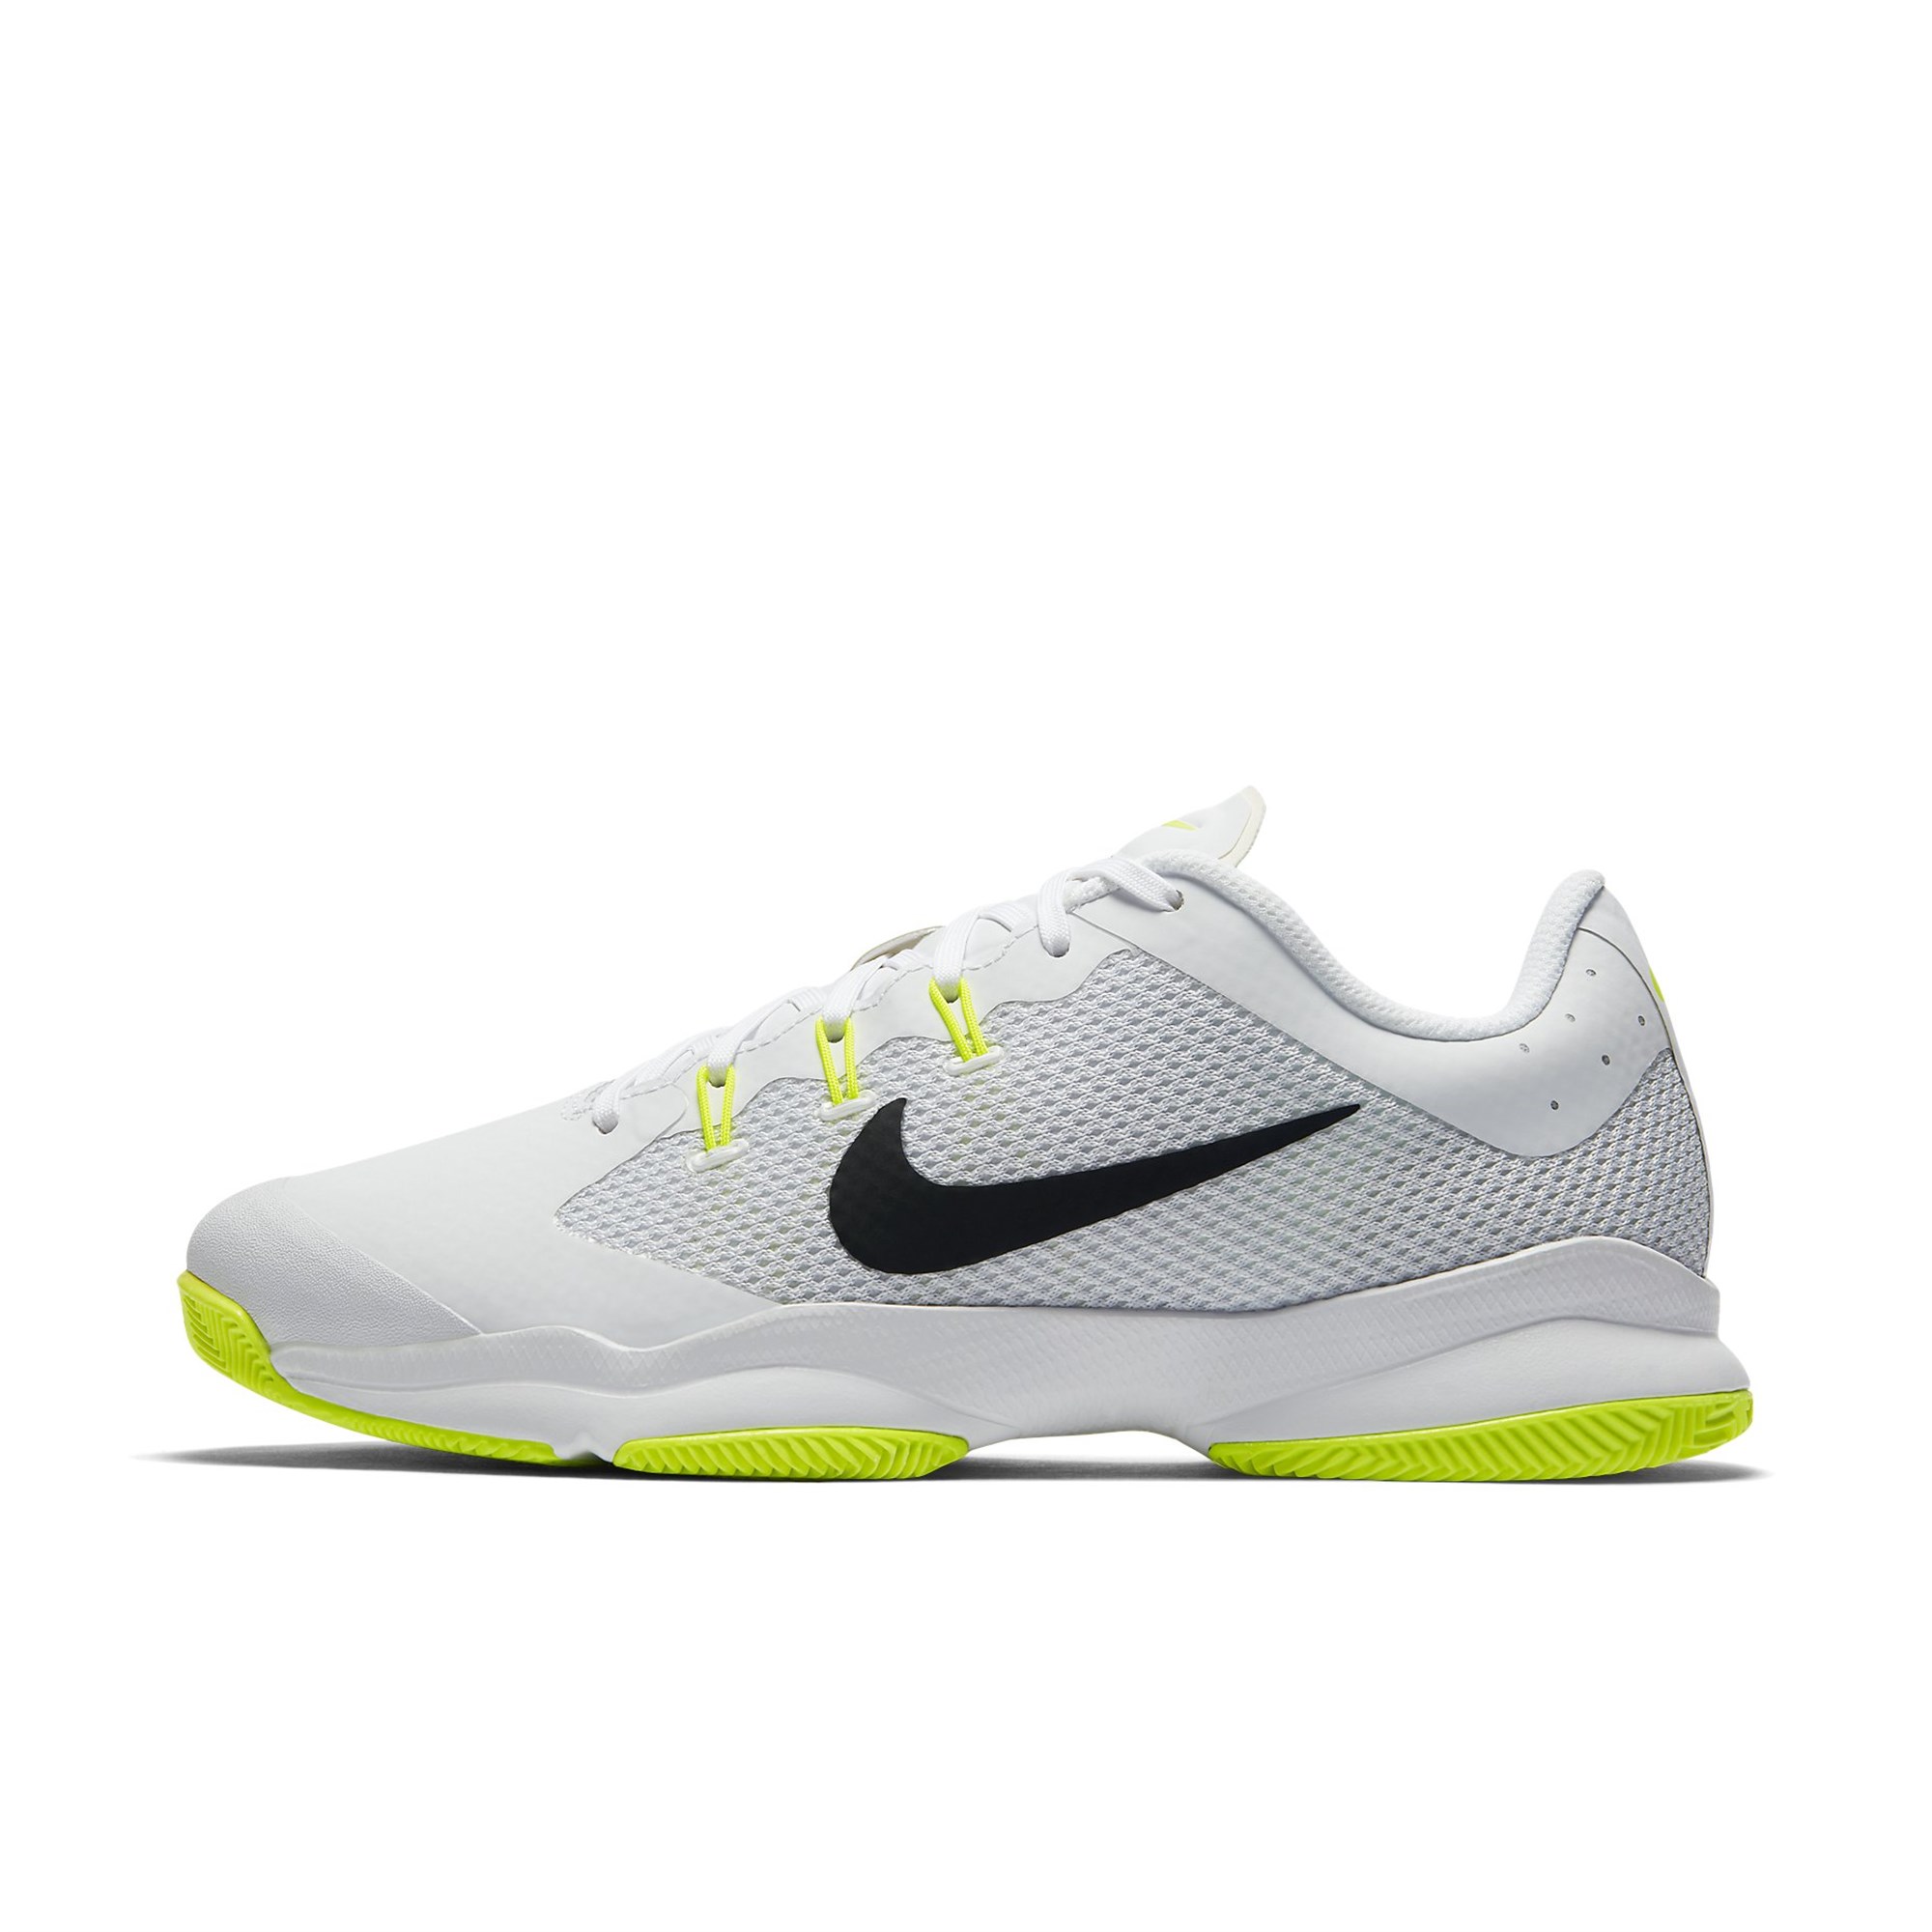 Найк теннис. Теннисные кроссовки "NIKECOURT Air Max Volley" Nike.